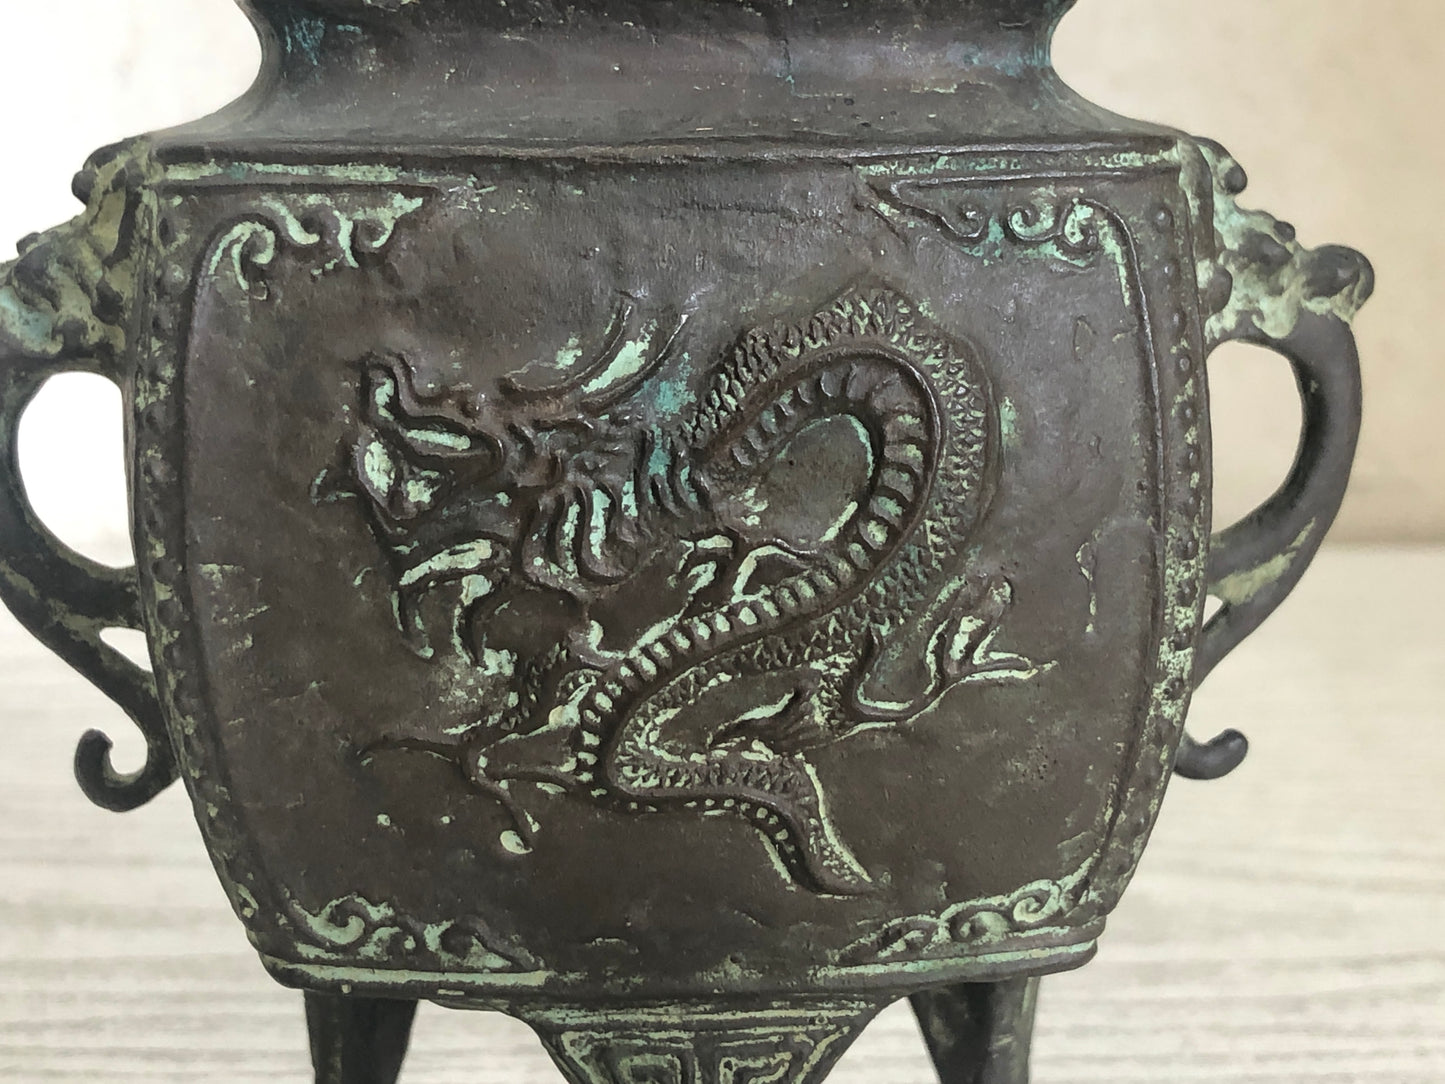 Y3354 KOURO Copper Dragon Lion knob signed Japan fragrance aroma incense burner